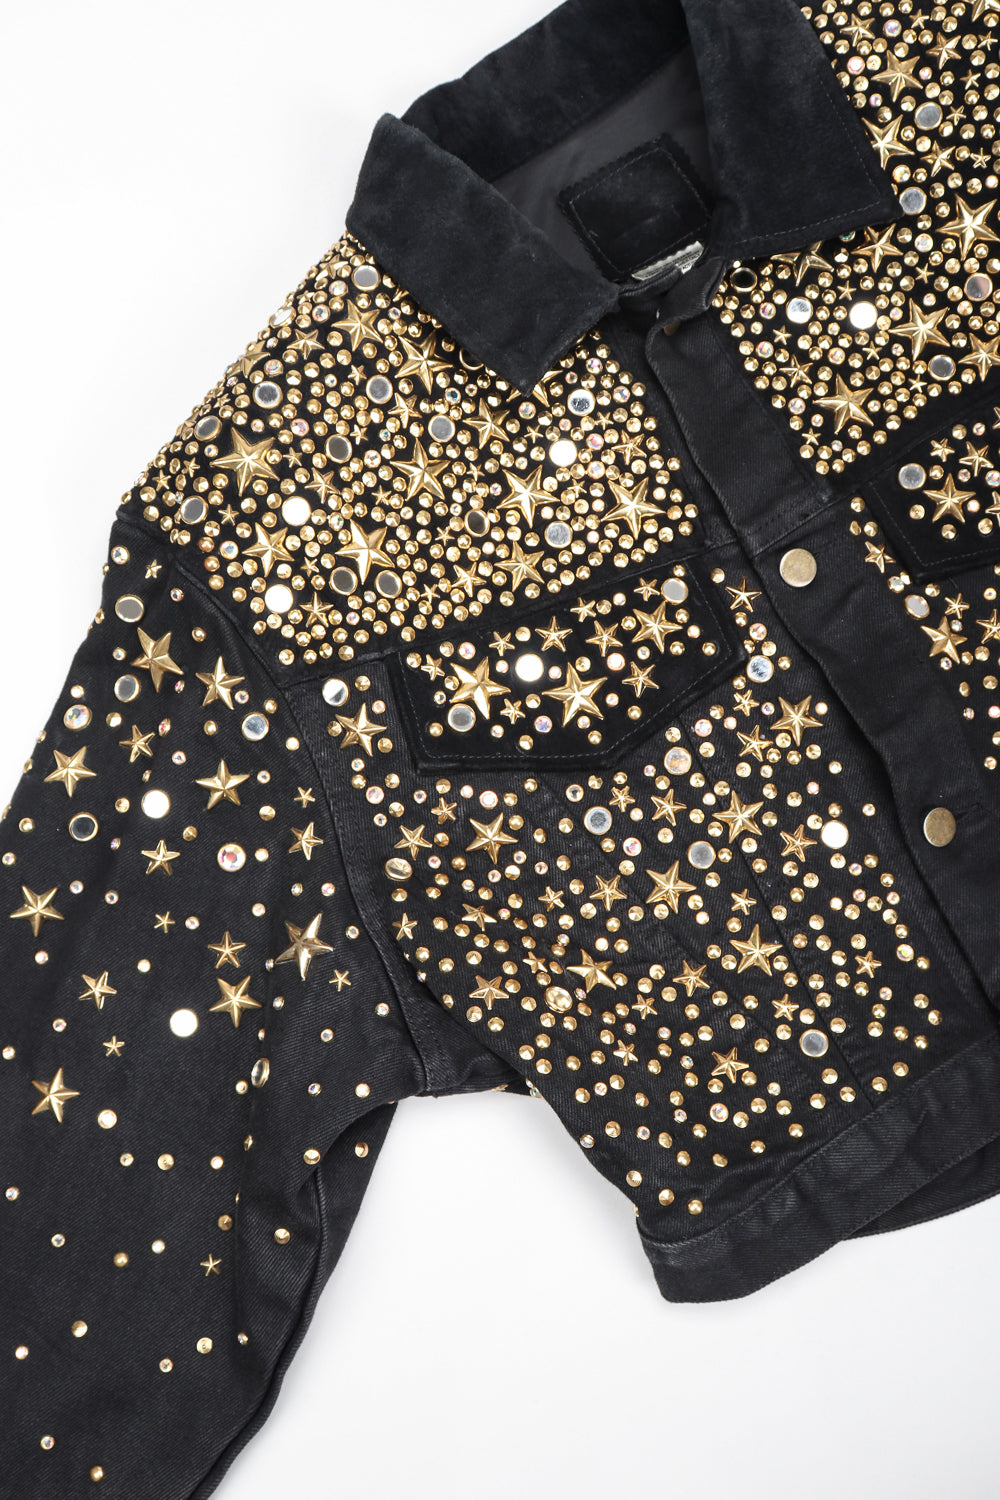 Recess Designer Consignment Vintage K.Baumann Embellished Studded Stardust Jean Jacket Los Angeles Resale